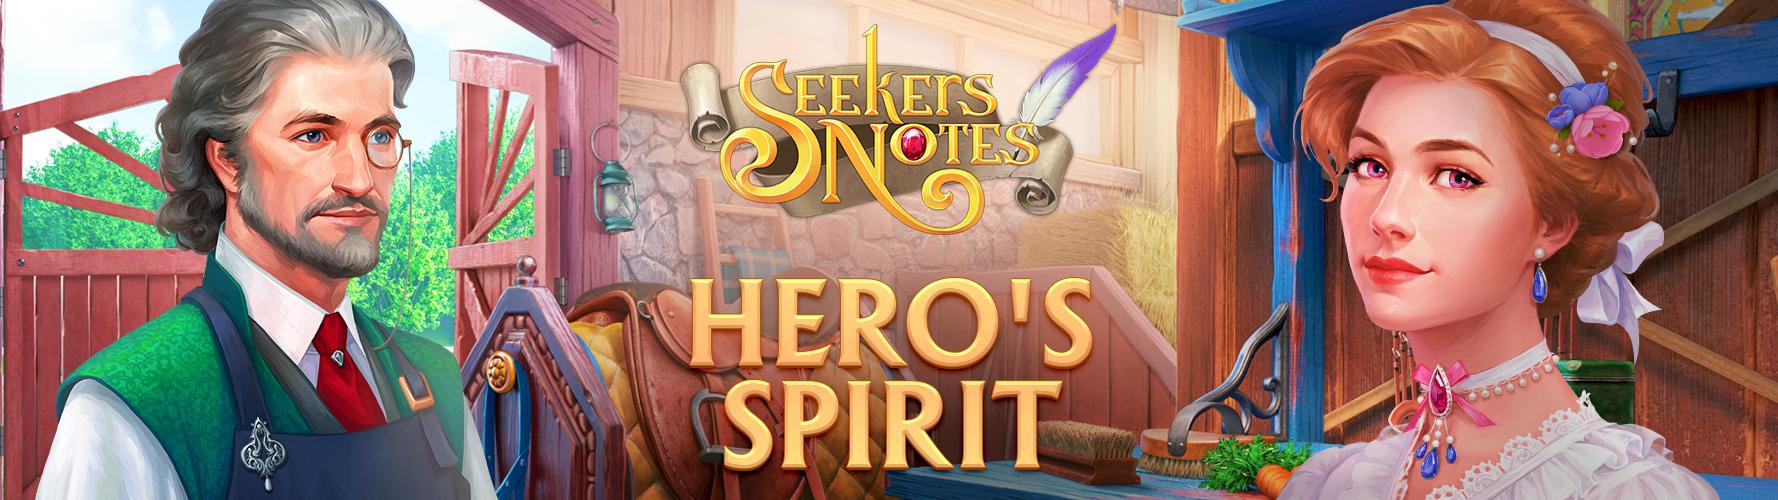 SEEKERS NOTES. UPDATE 2.17: HERO'S SPIRIT